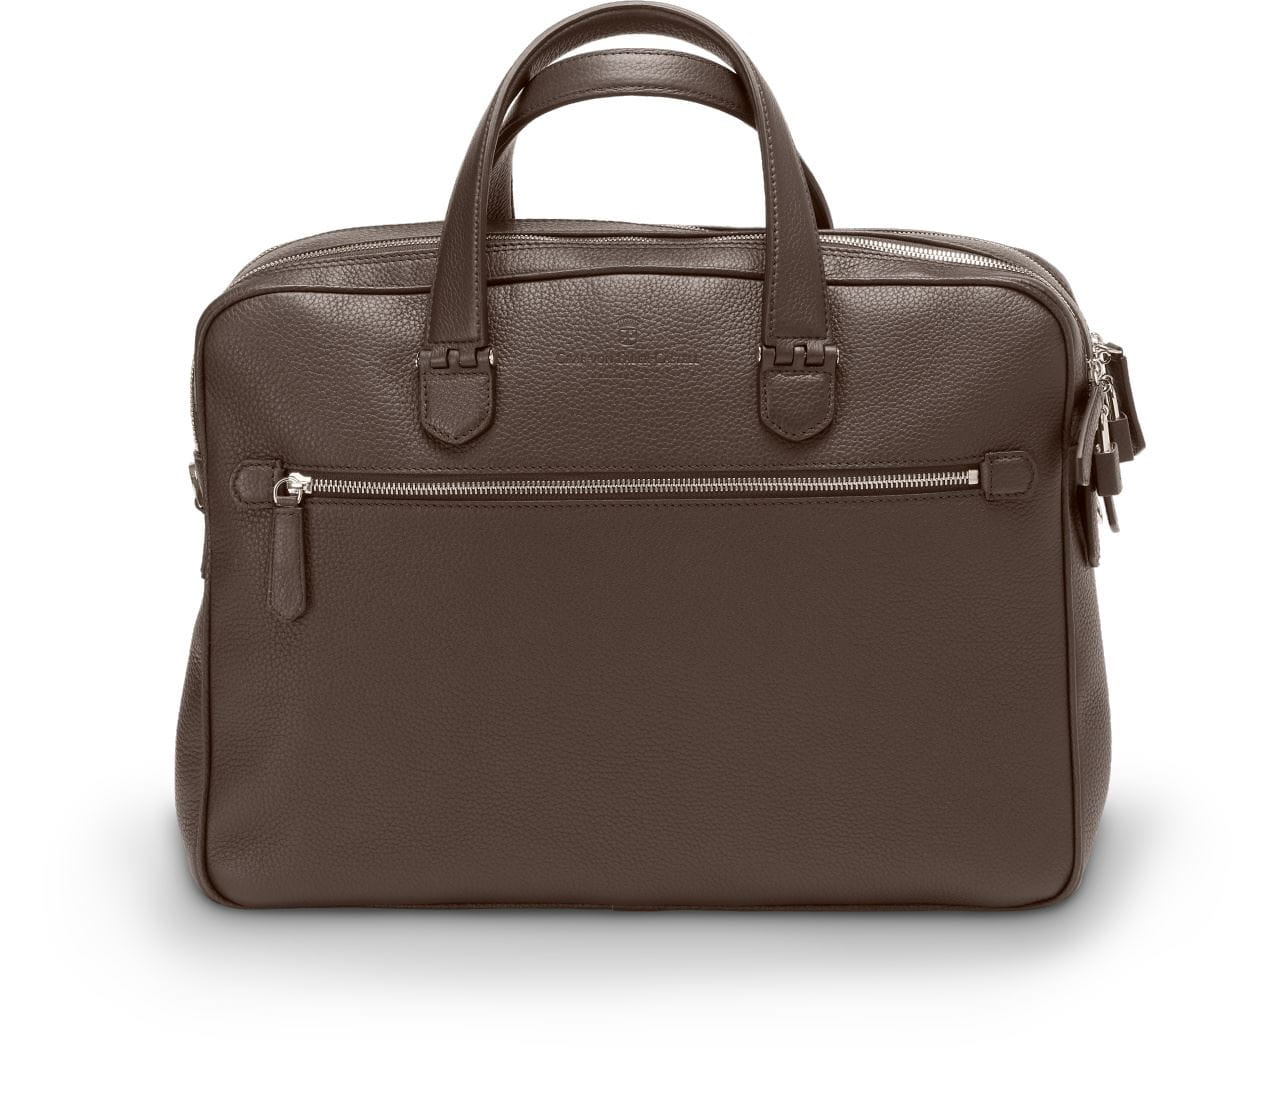 Graf-von-Faber-Castell - Briefcase with two compartments Cashmere, dark brown